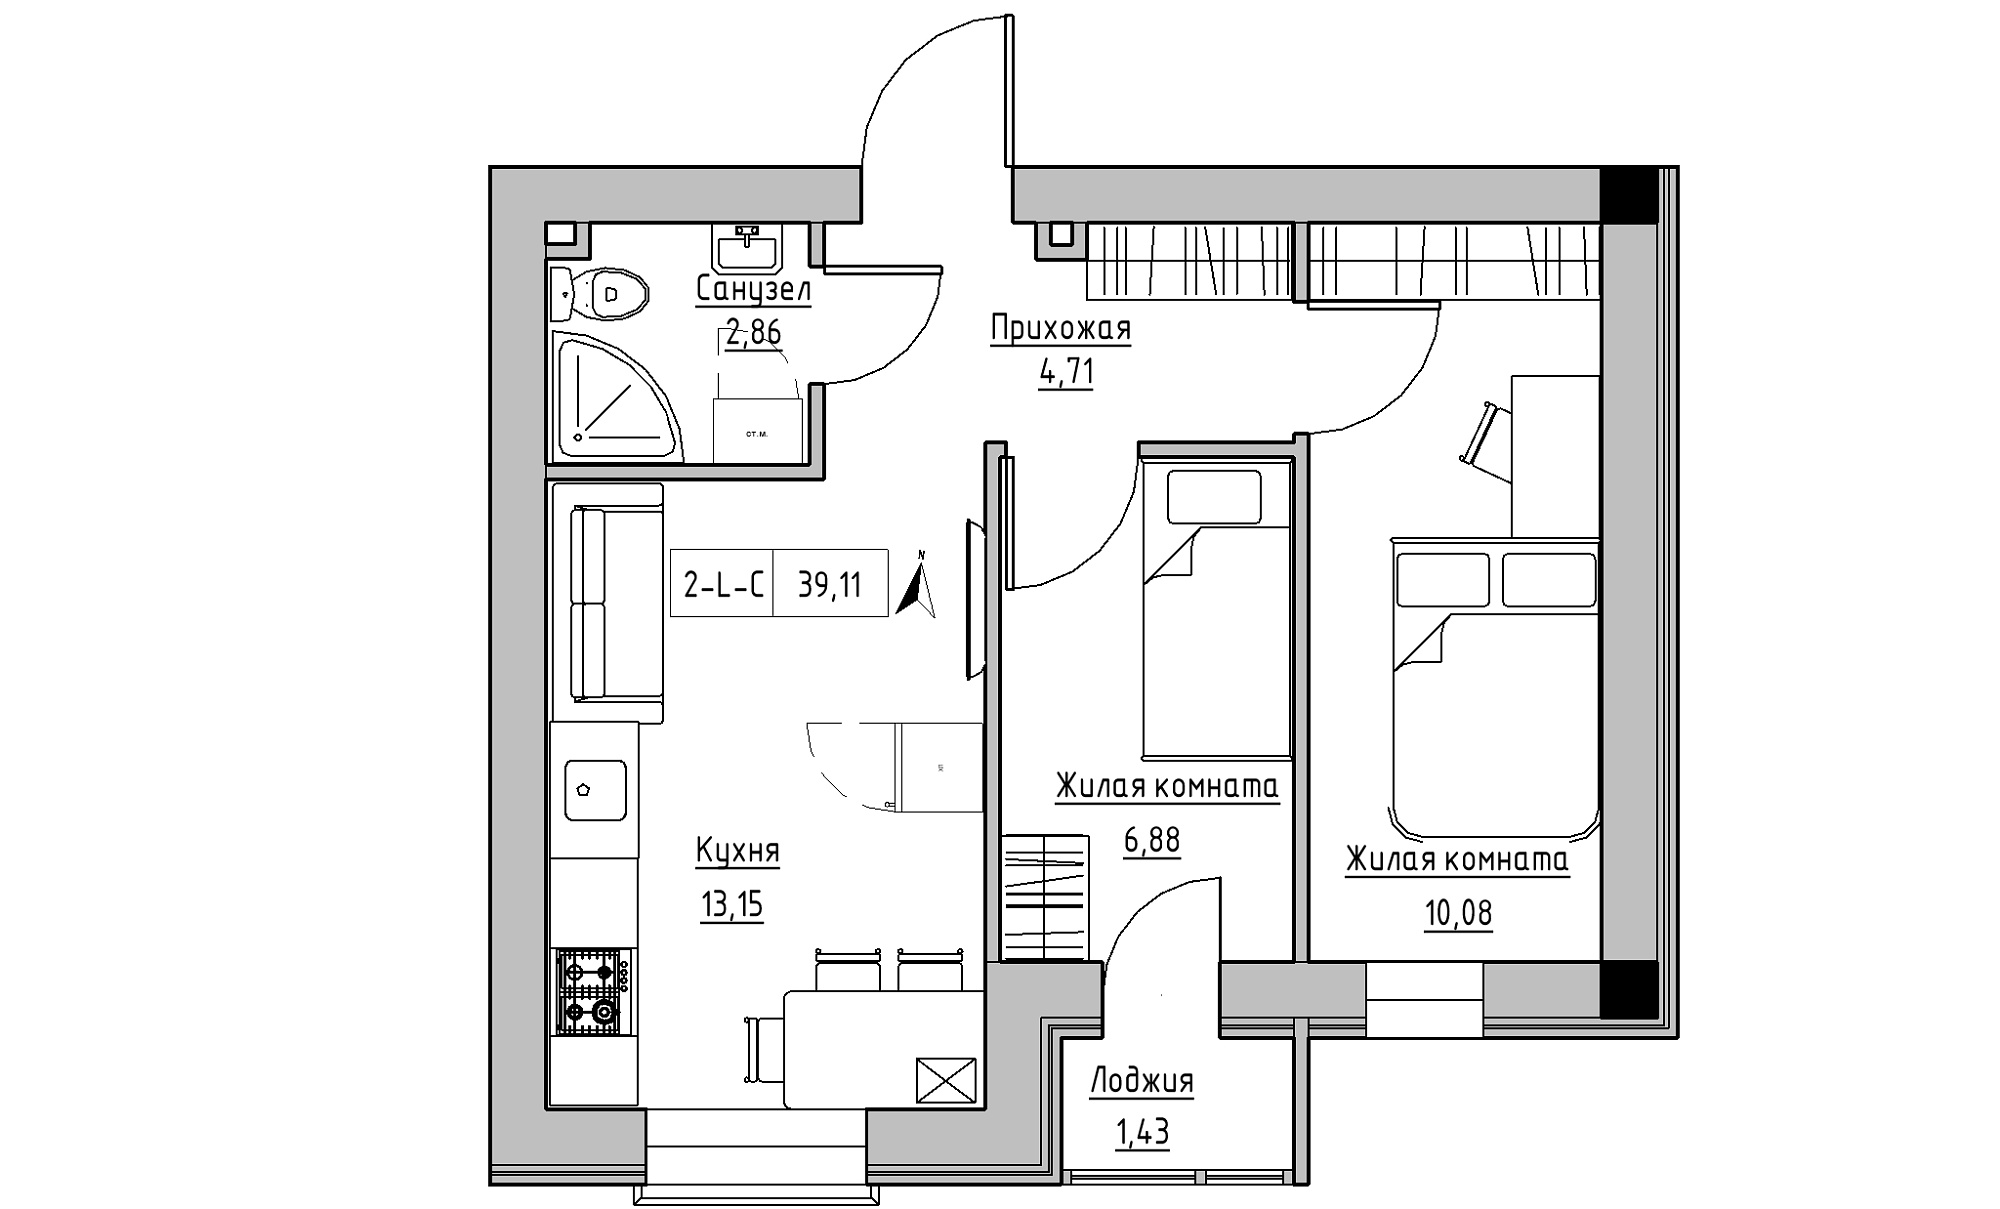 Планування 2-к квартира площею 39.11м2, KS-016-01/0005.